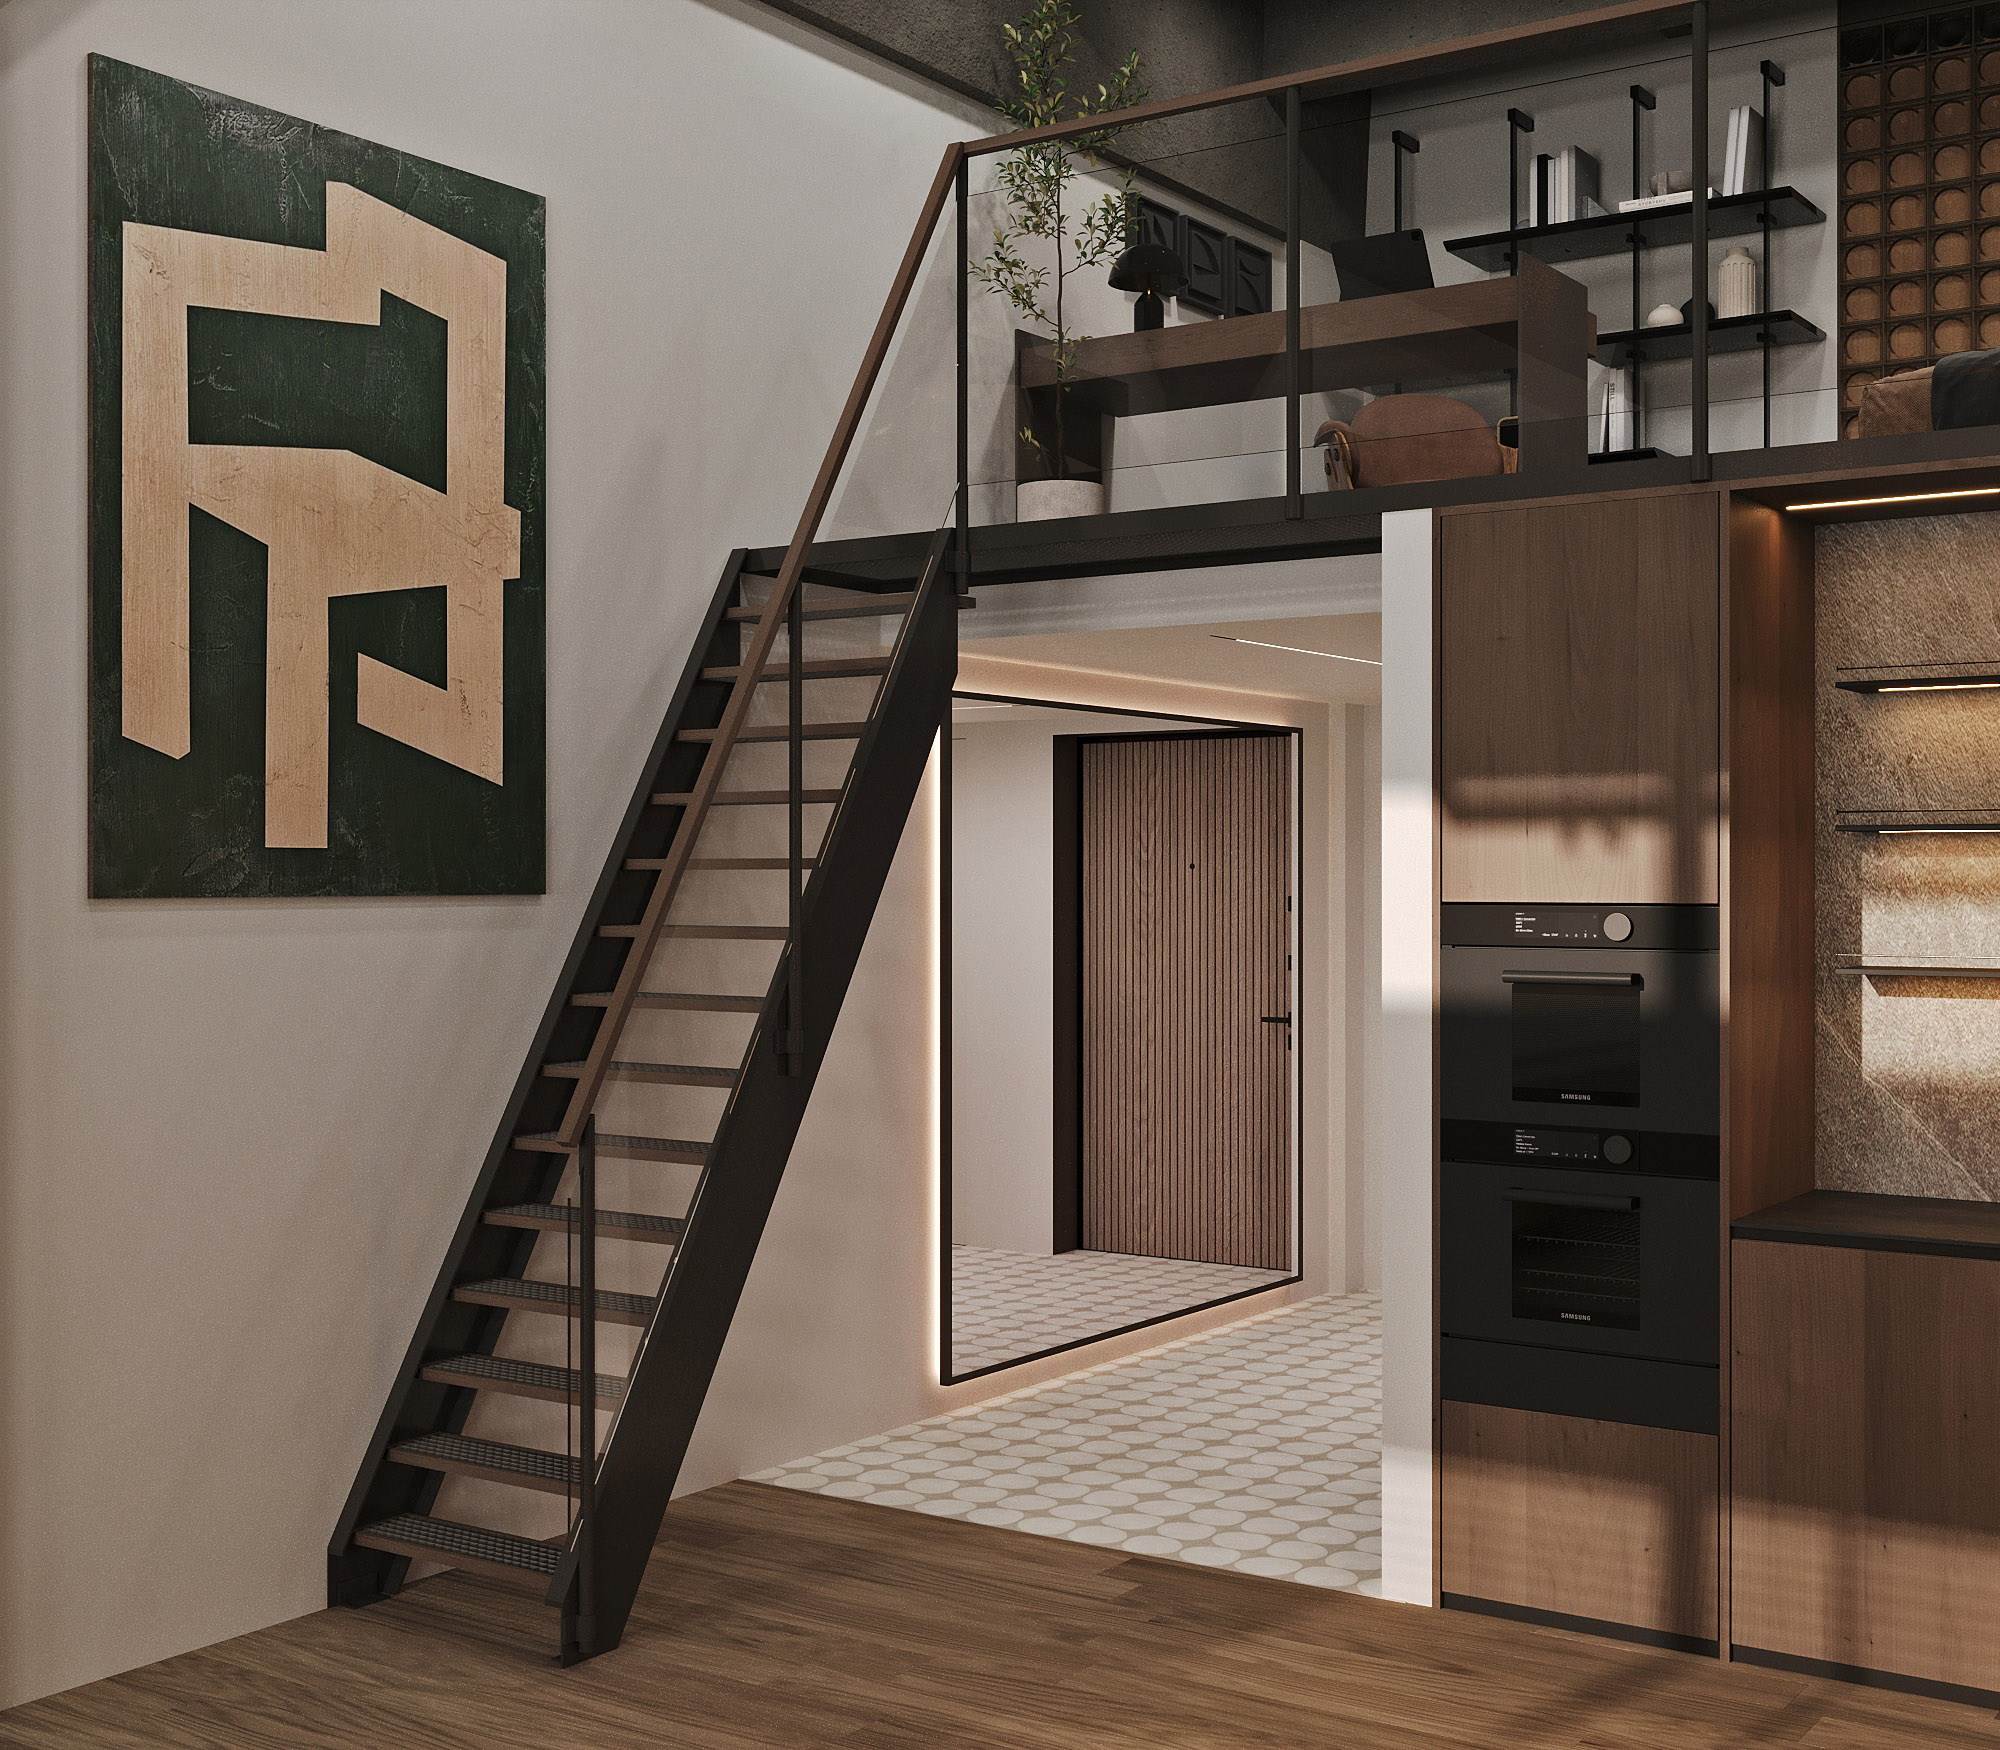 Дизайн-проект двухуровневой квартиры в стиле лофт. Интерьер. Концепция. 3д-визуализация